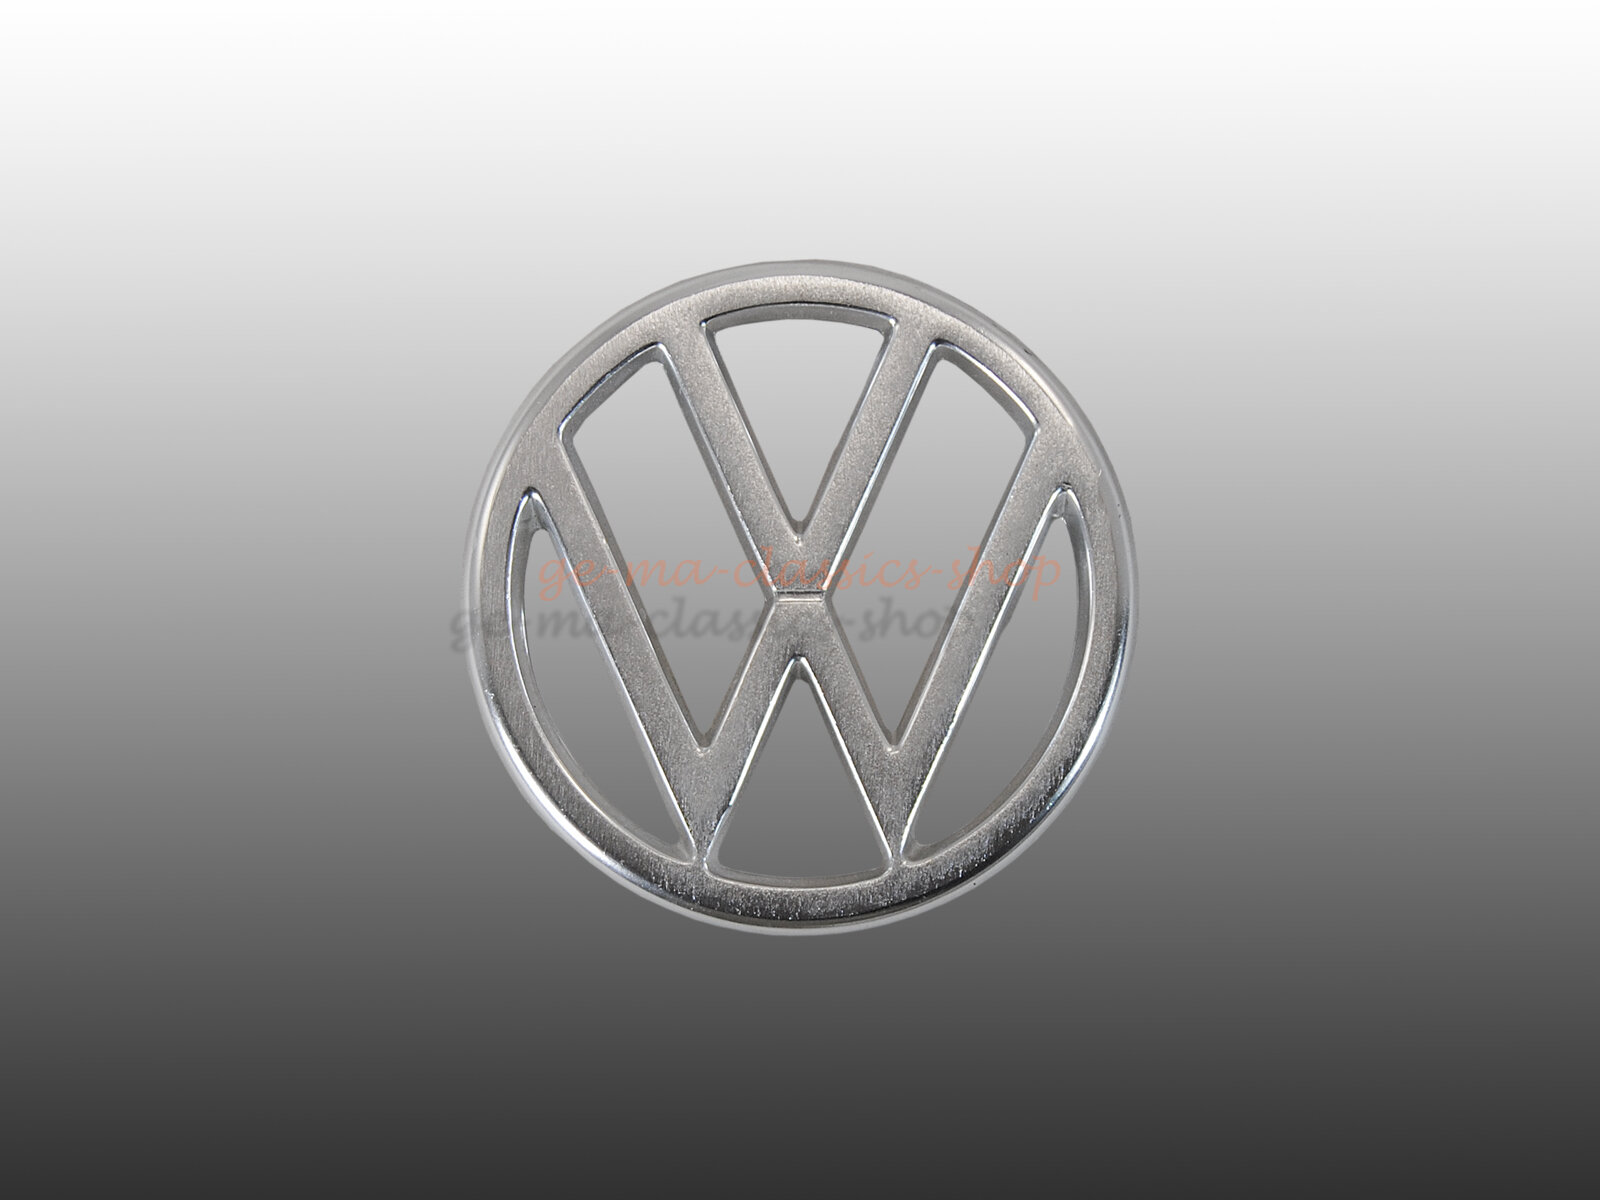 Emblem Zeichen Fronthaube für VW Typ3 ab 70 Kübel Original